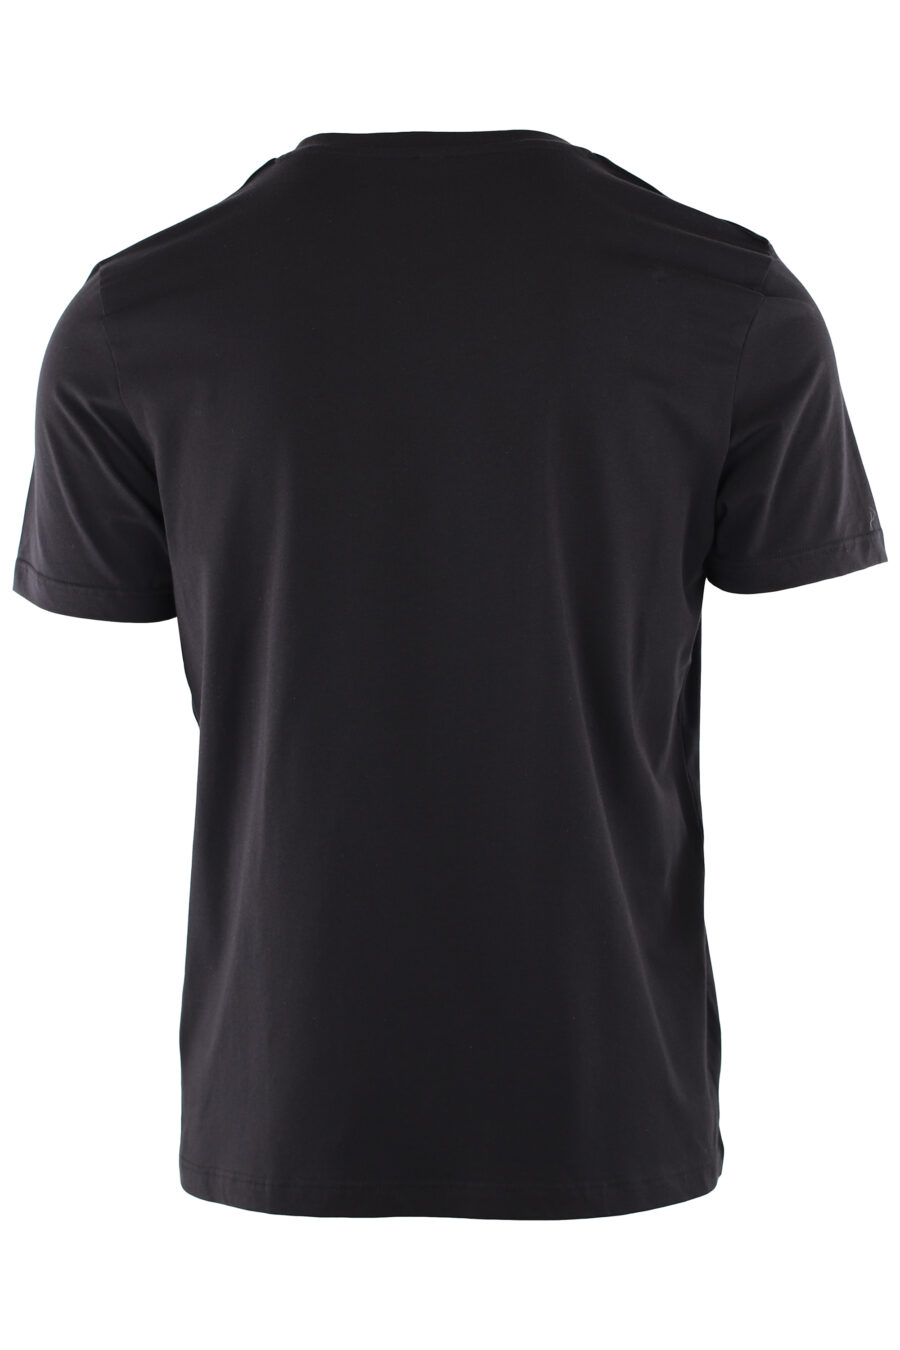 Pack de dos camisetas negras con logo en cinta en hombros - IMG 7310